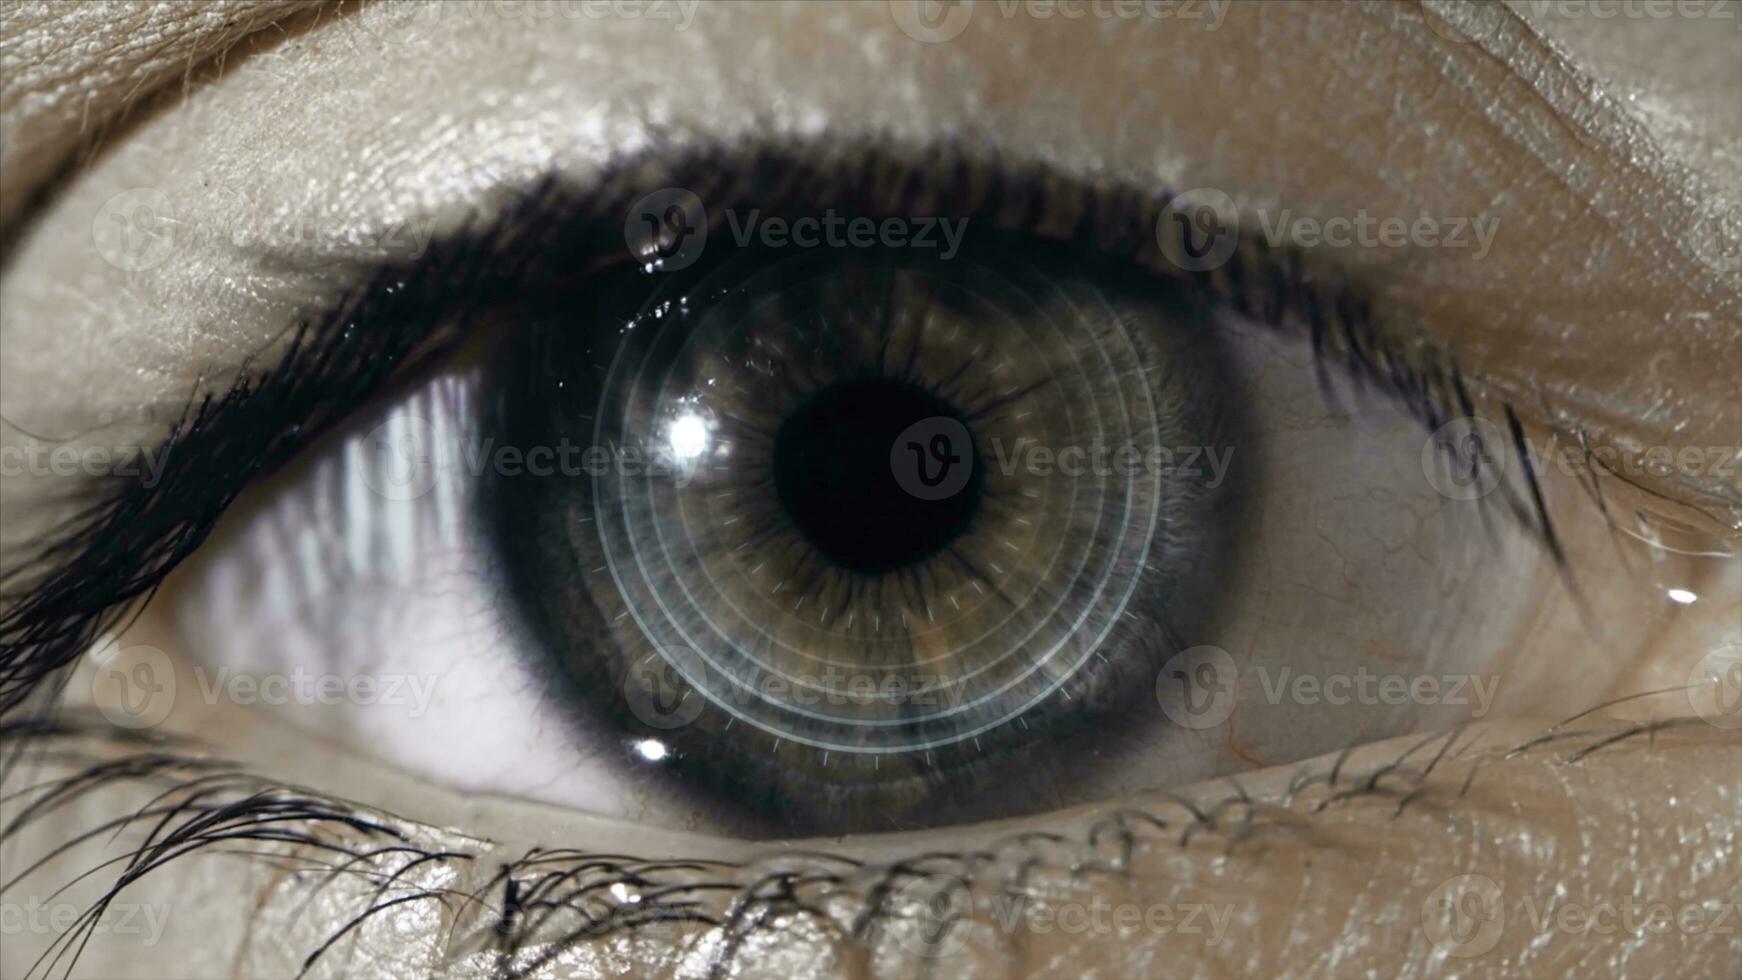 tecnologico lente su il occhio. il concetto di futuro tecnologie. femmina occhio con futuristico lente, macro foto